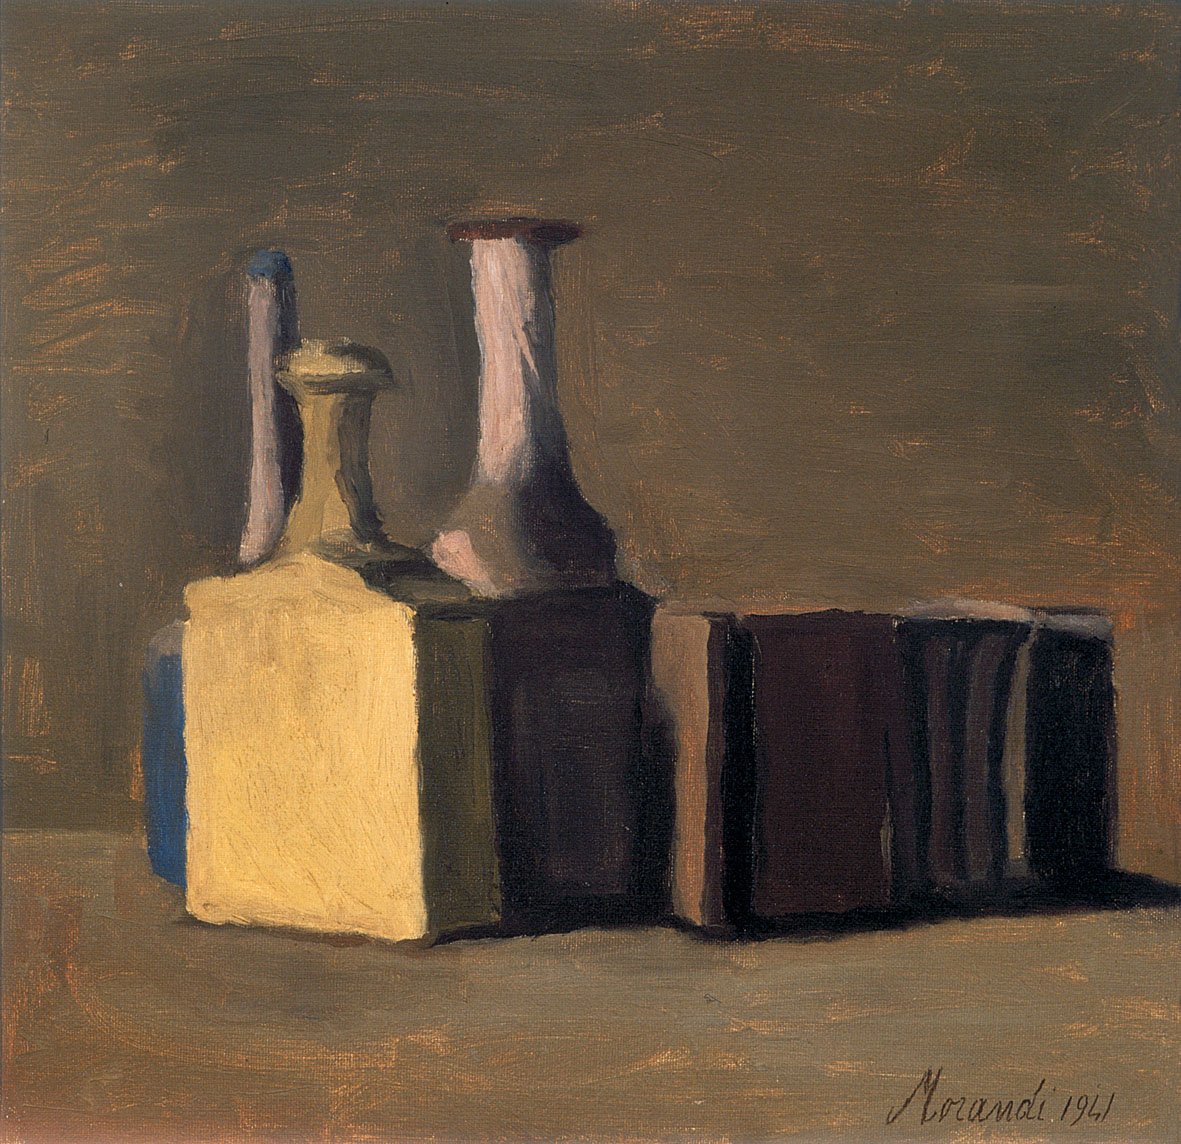 Giorgio Morandi, Natura morta, olio su tela, 1941. Fondazione Cassa di Risparmio di Verona Vicenza Belluno e Ancona